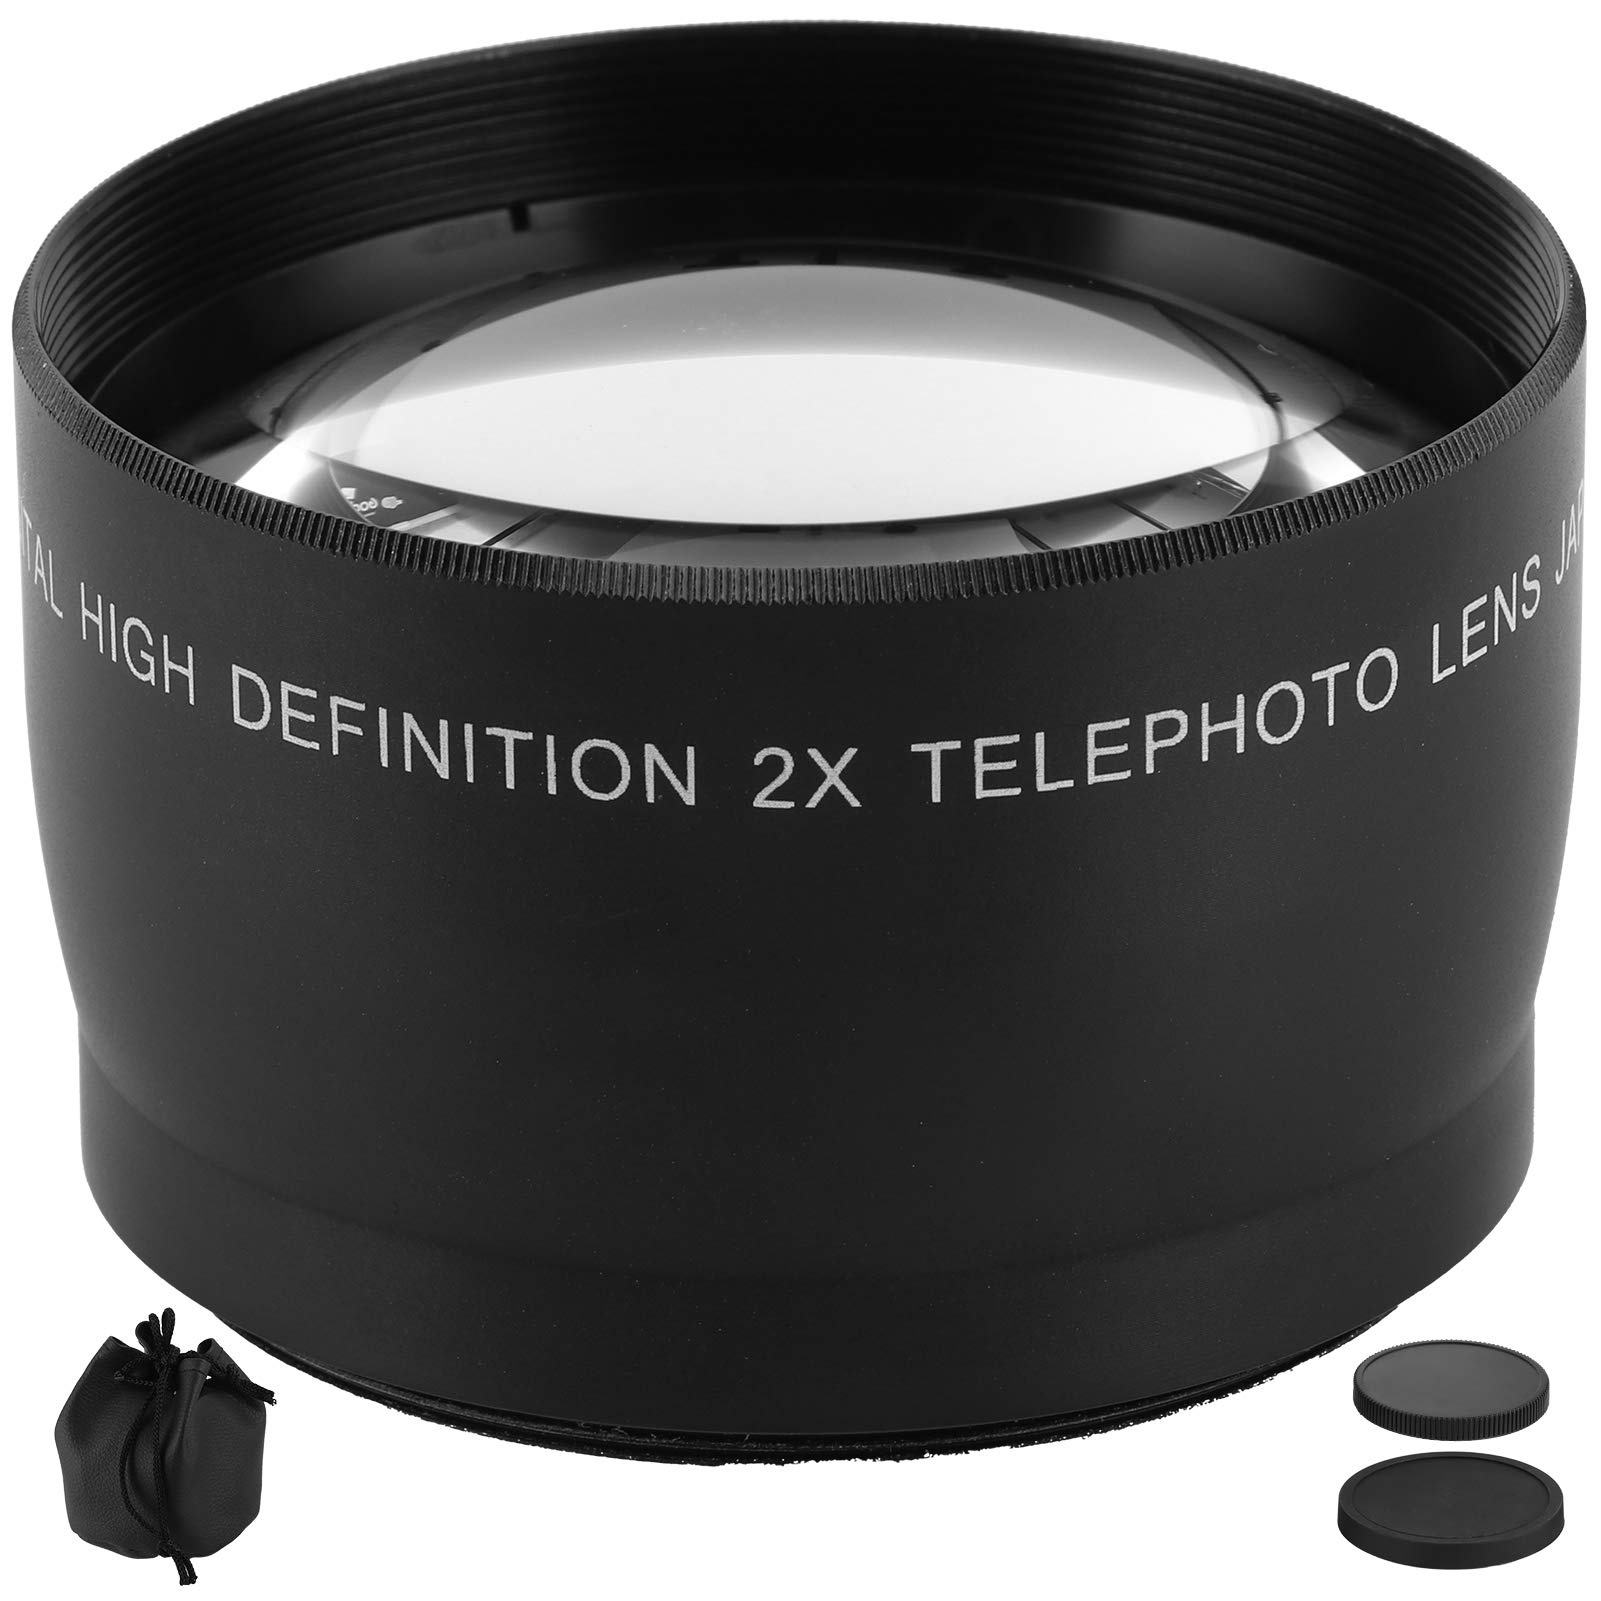 Goshyda 2X Teleobjektiv für Kameraobjektive mit einem Filterdurchmesser von 55 mm, optisches Glas + Korrosionsbeständiges Objektiv aus legiertem Material